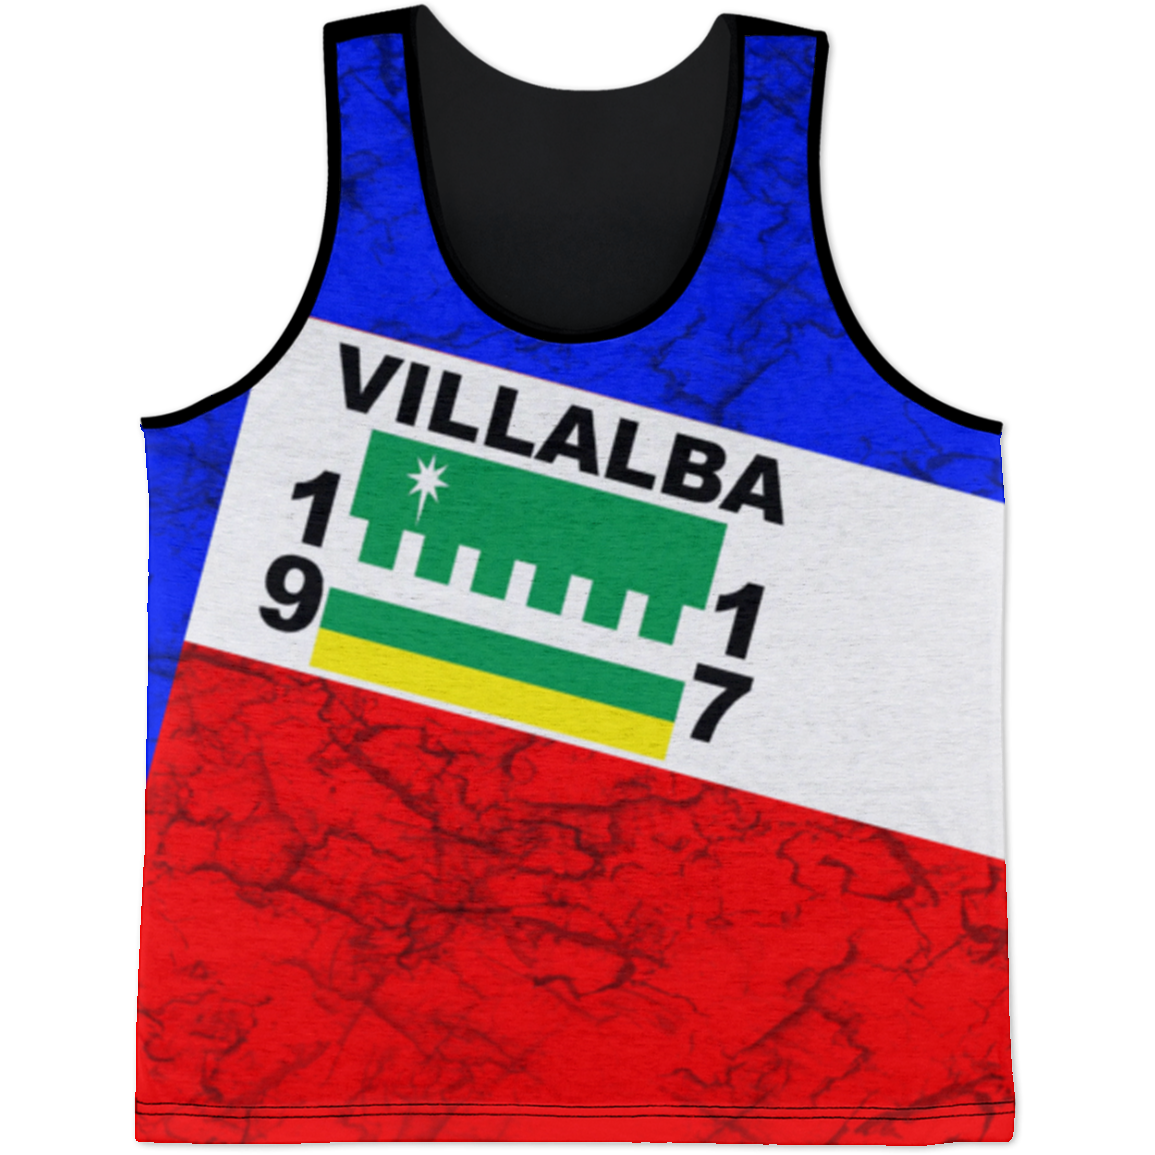 Villalba Tank Top - Puerto Rican Pride